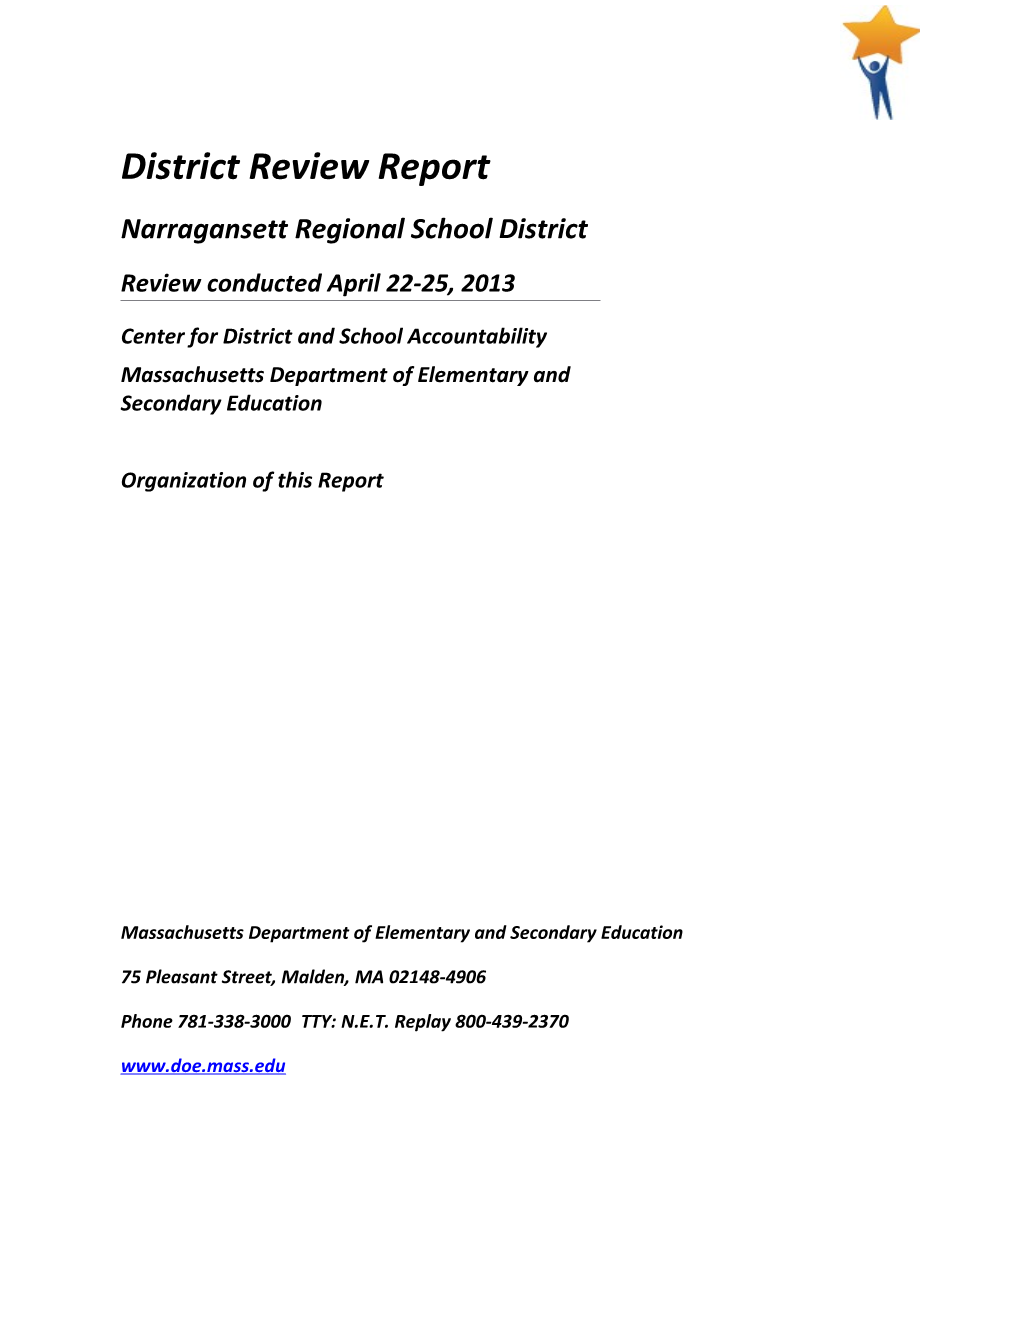 Narragansett RSD District Review Report, 2013 Onsite